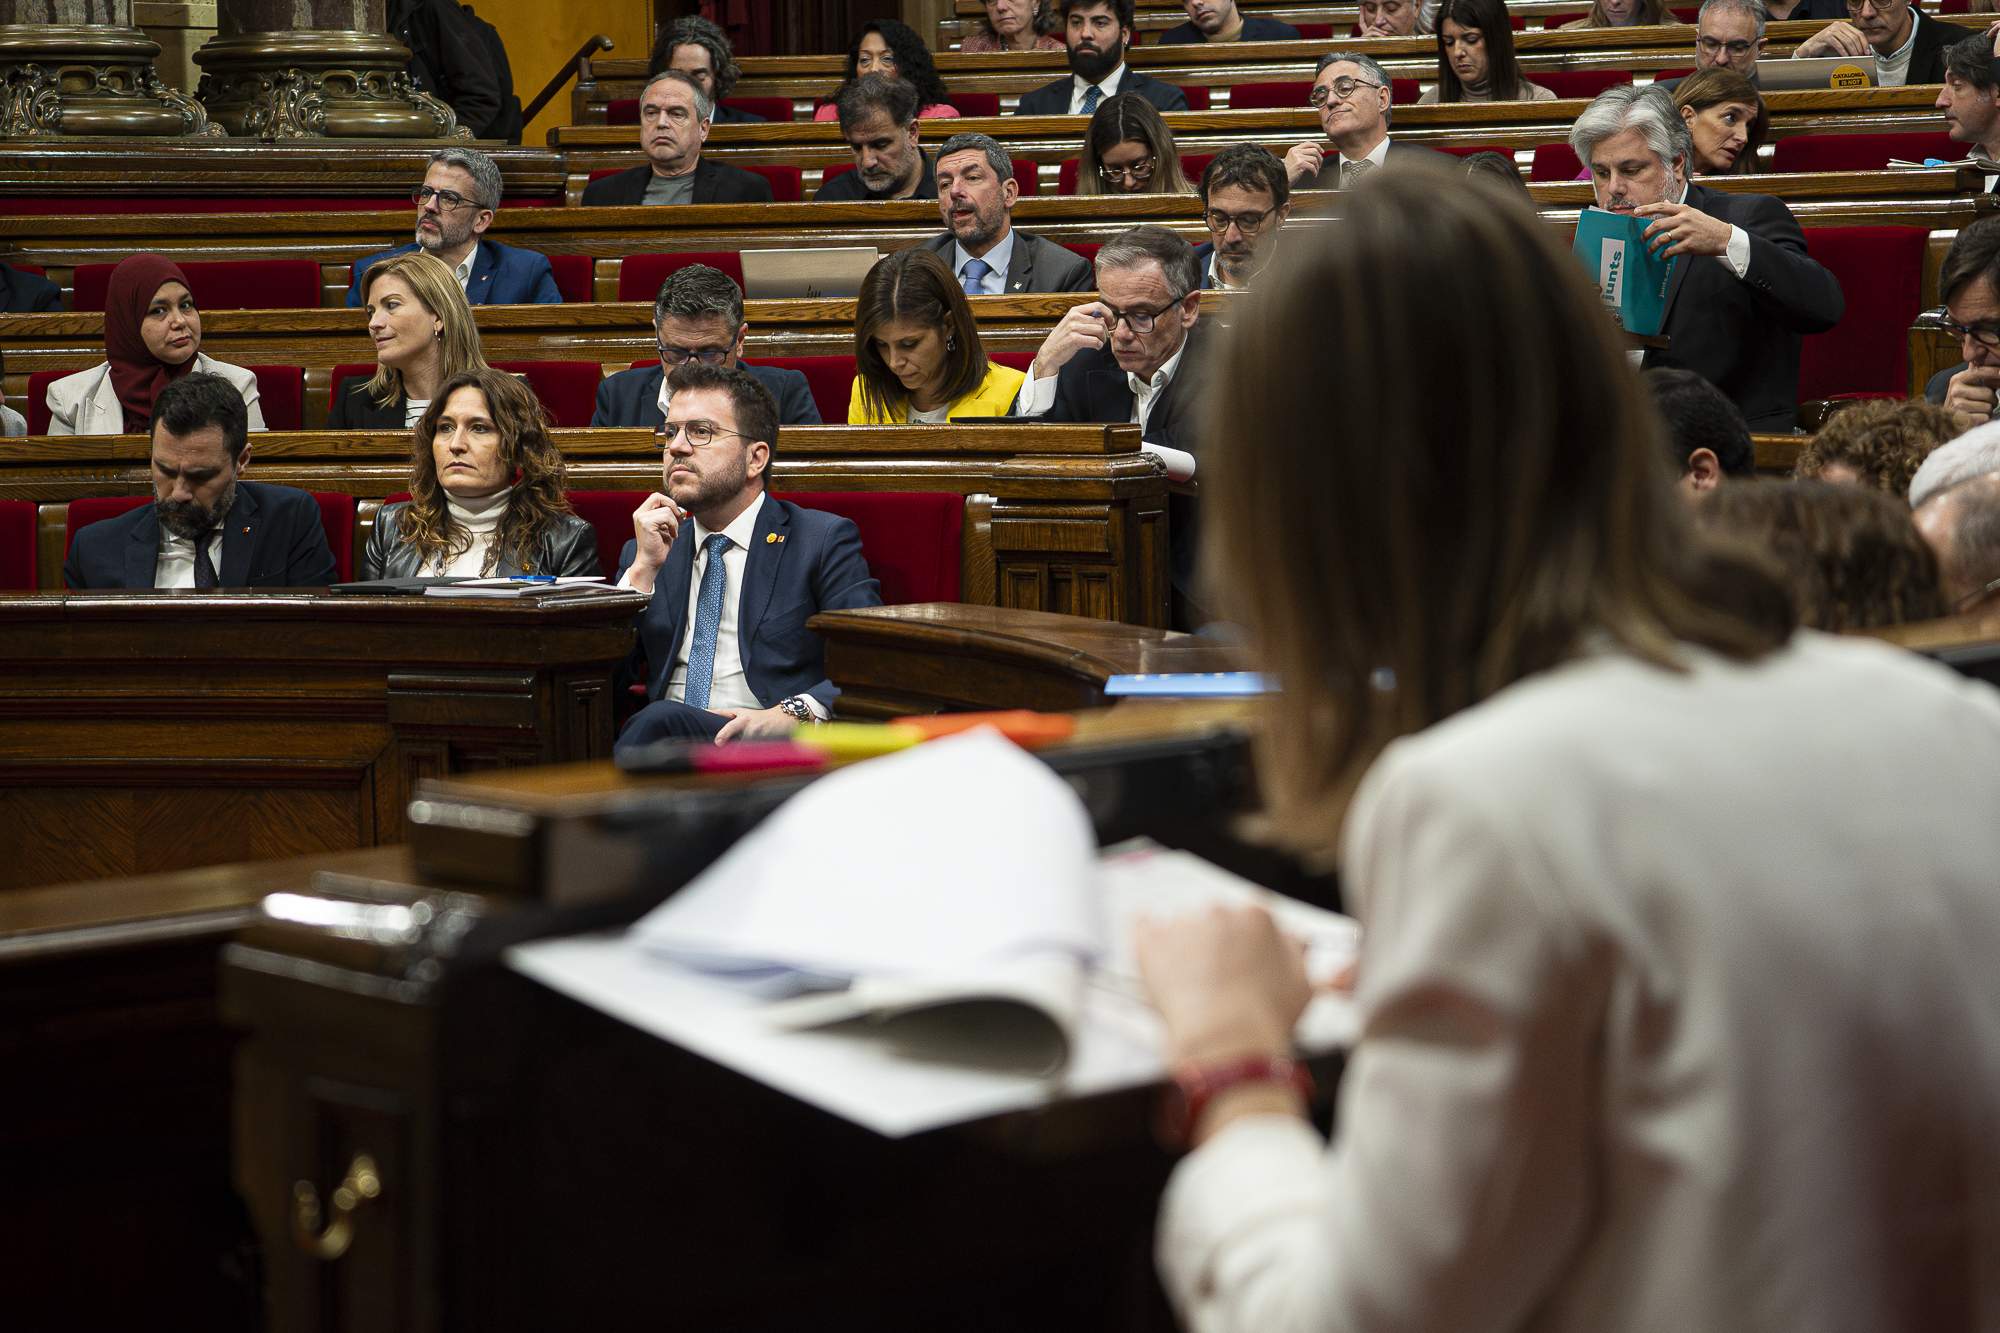 Els comuns tomben els pressupostos d'Aragonès i aboquen la legislatura a un futur incert